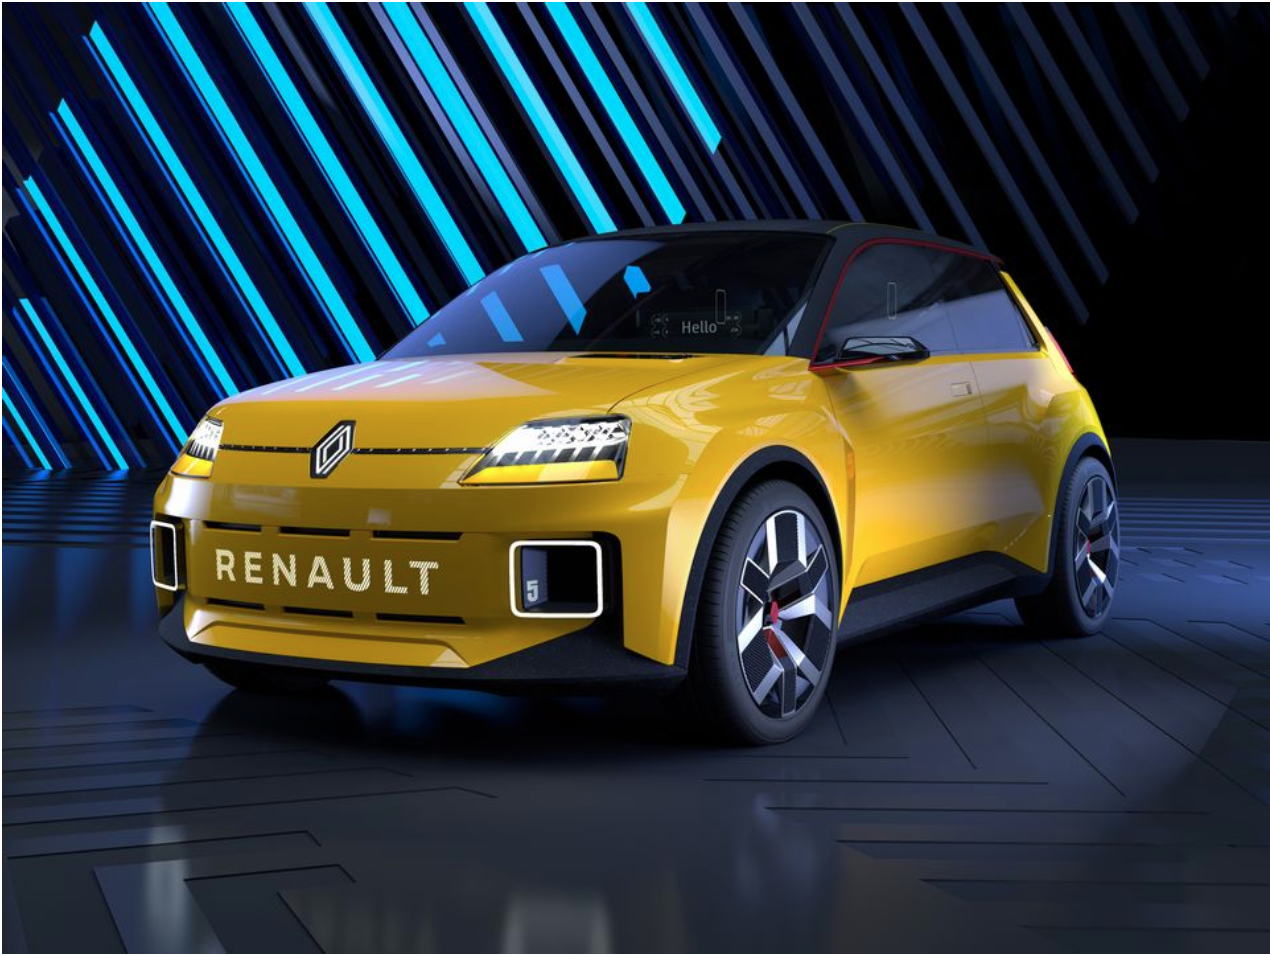 Renault ambitionne de faire 90 % de ses ventes sur ses modèles électriques d'ici à 2030